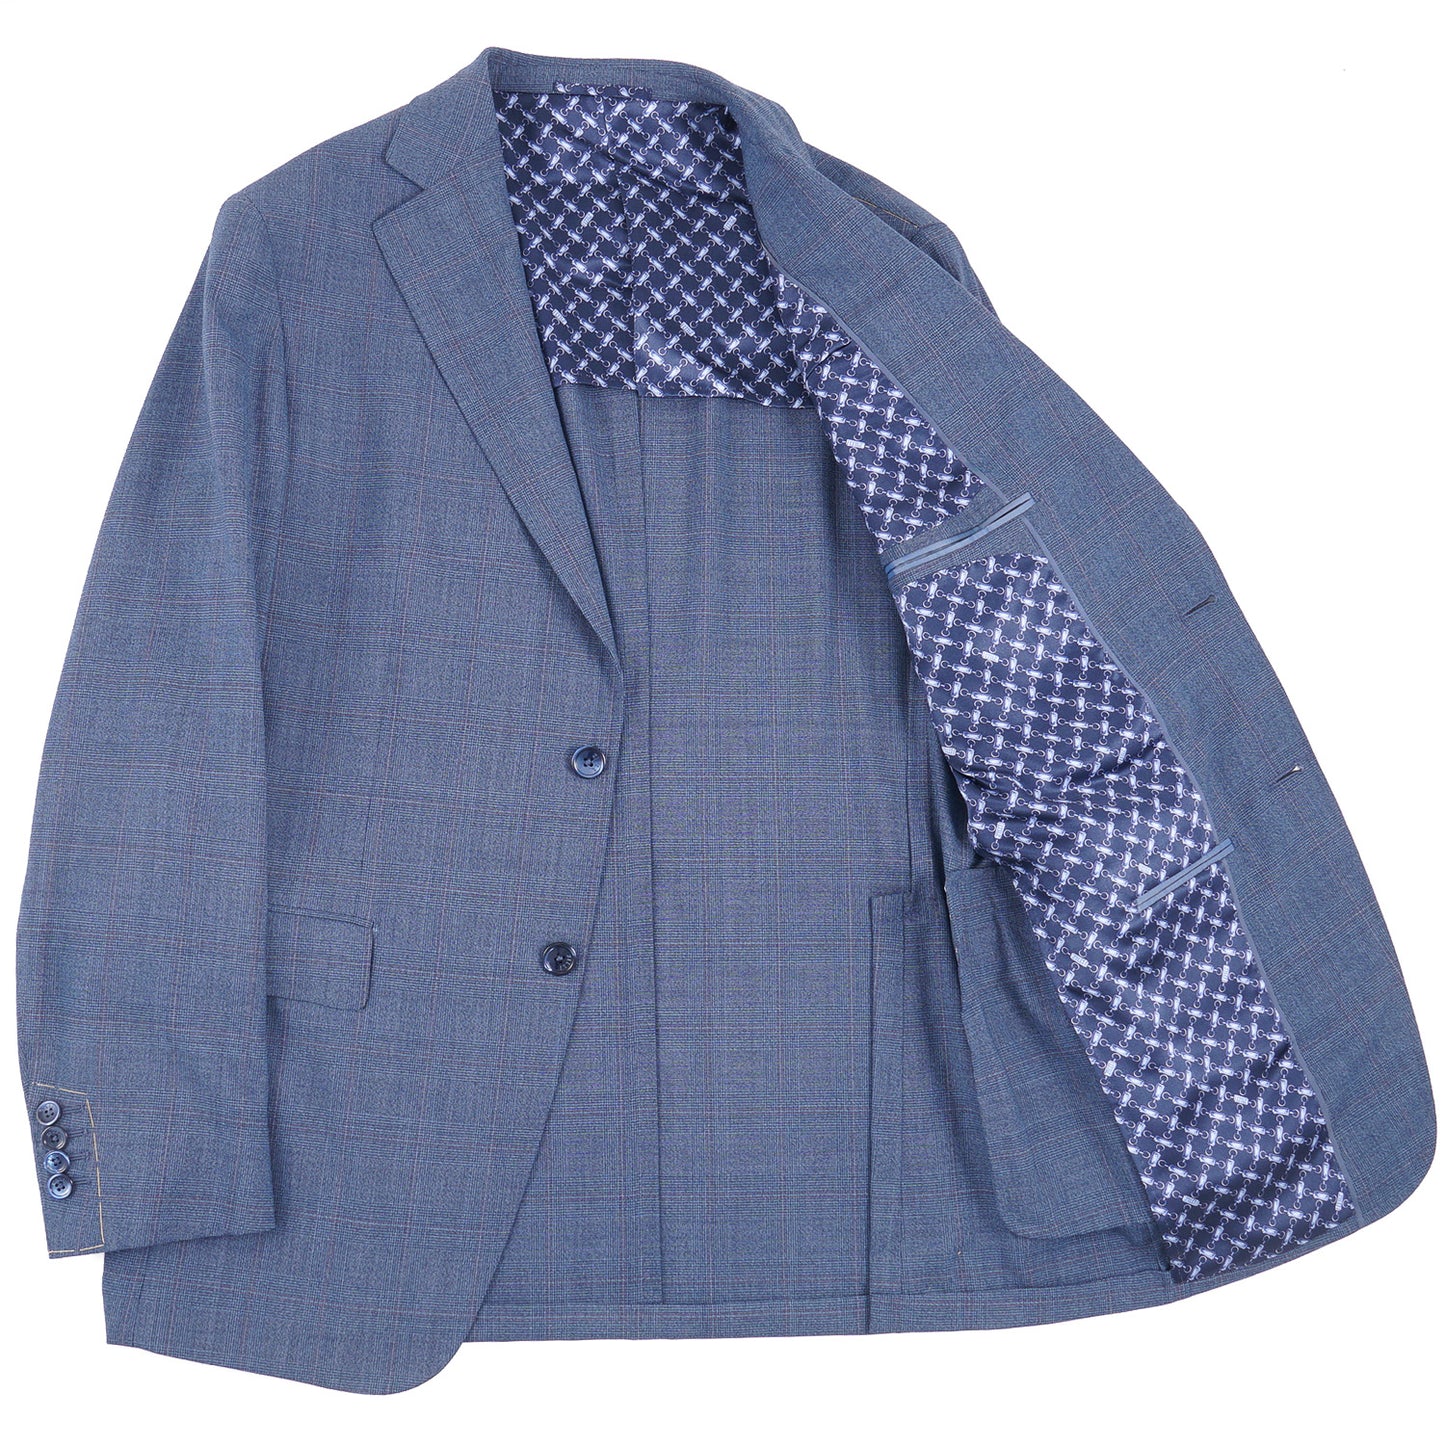 Zilli Blue Check Lightweight Wool Suit - Top Shelf Apparel